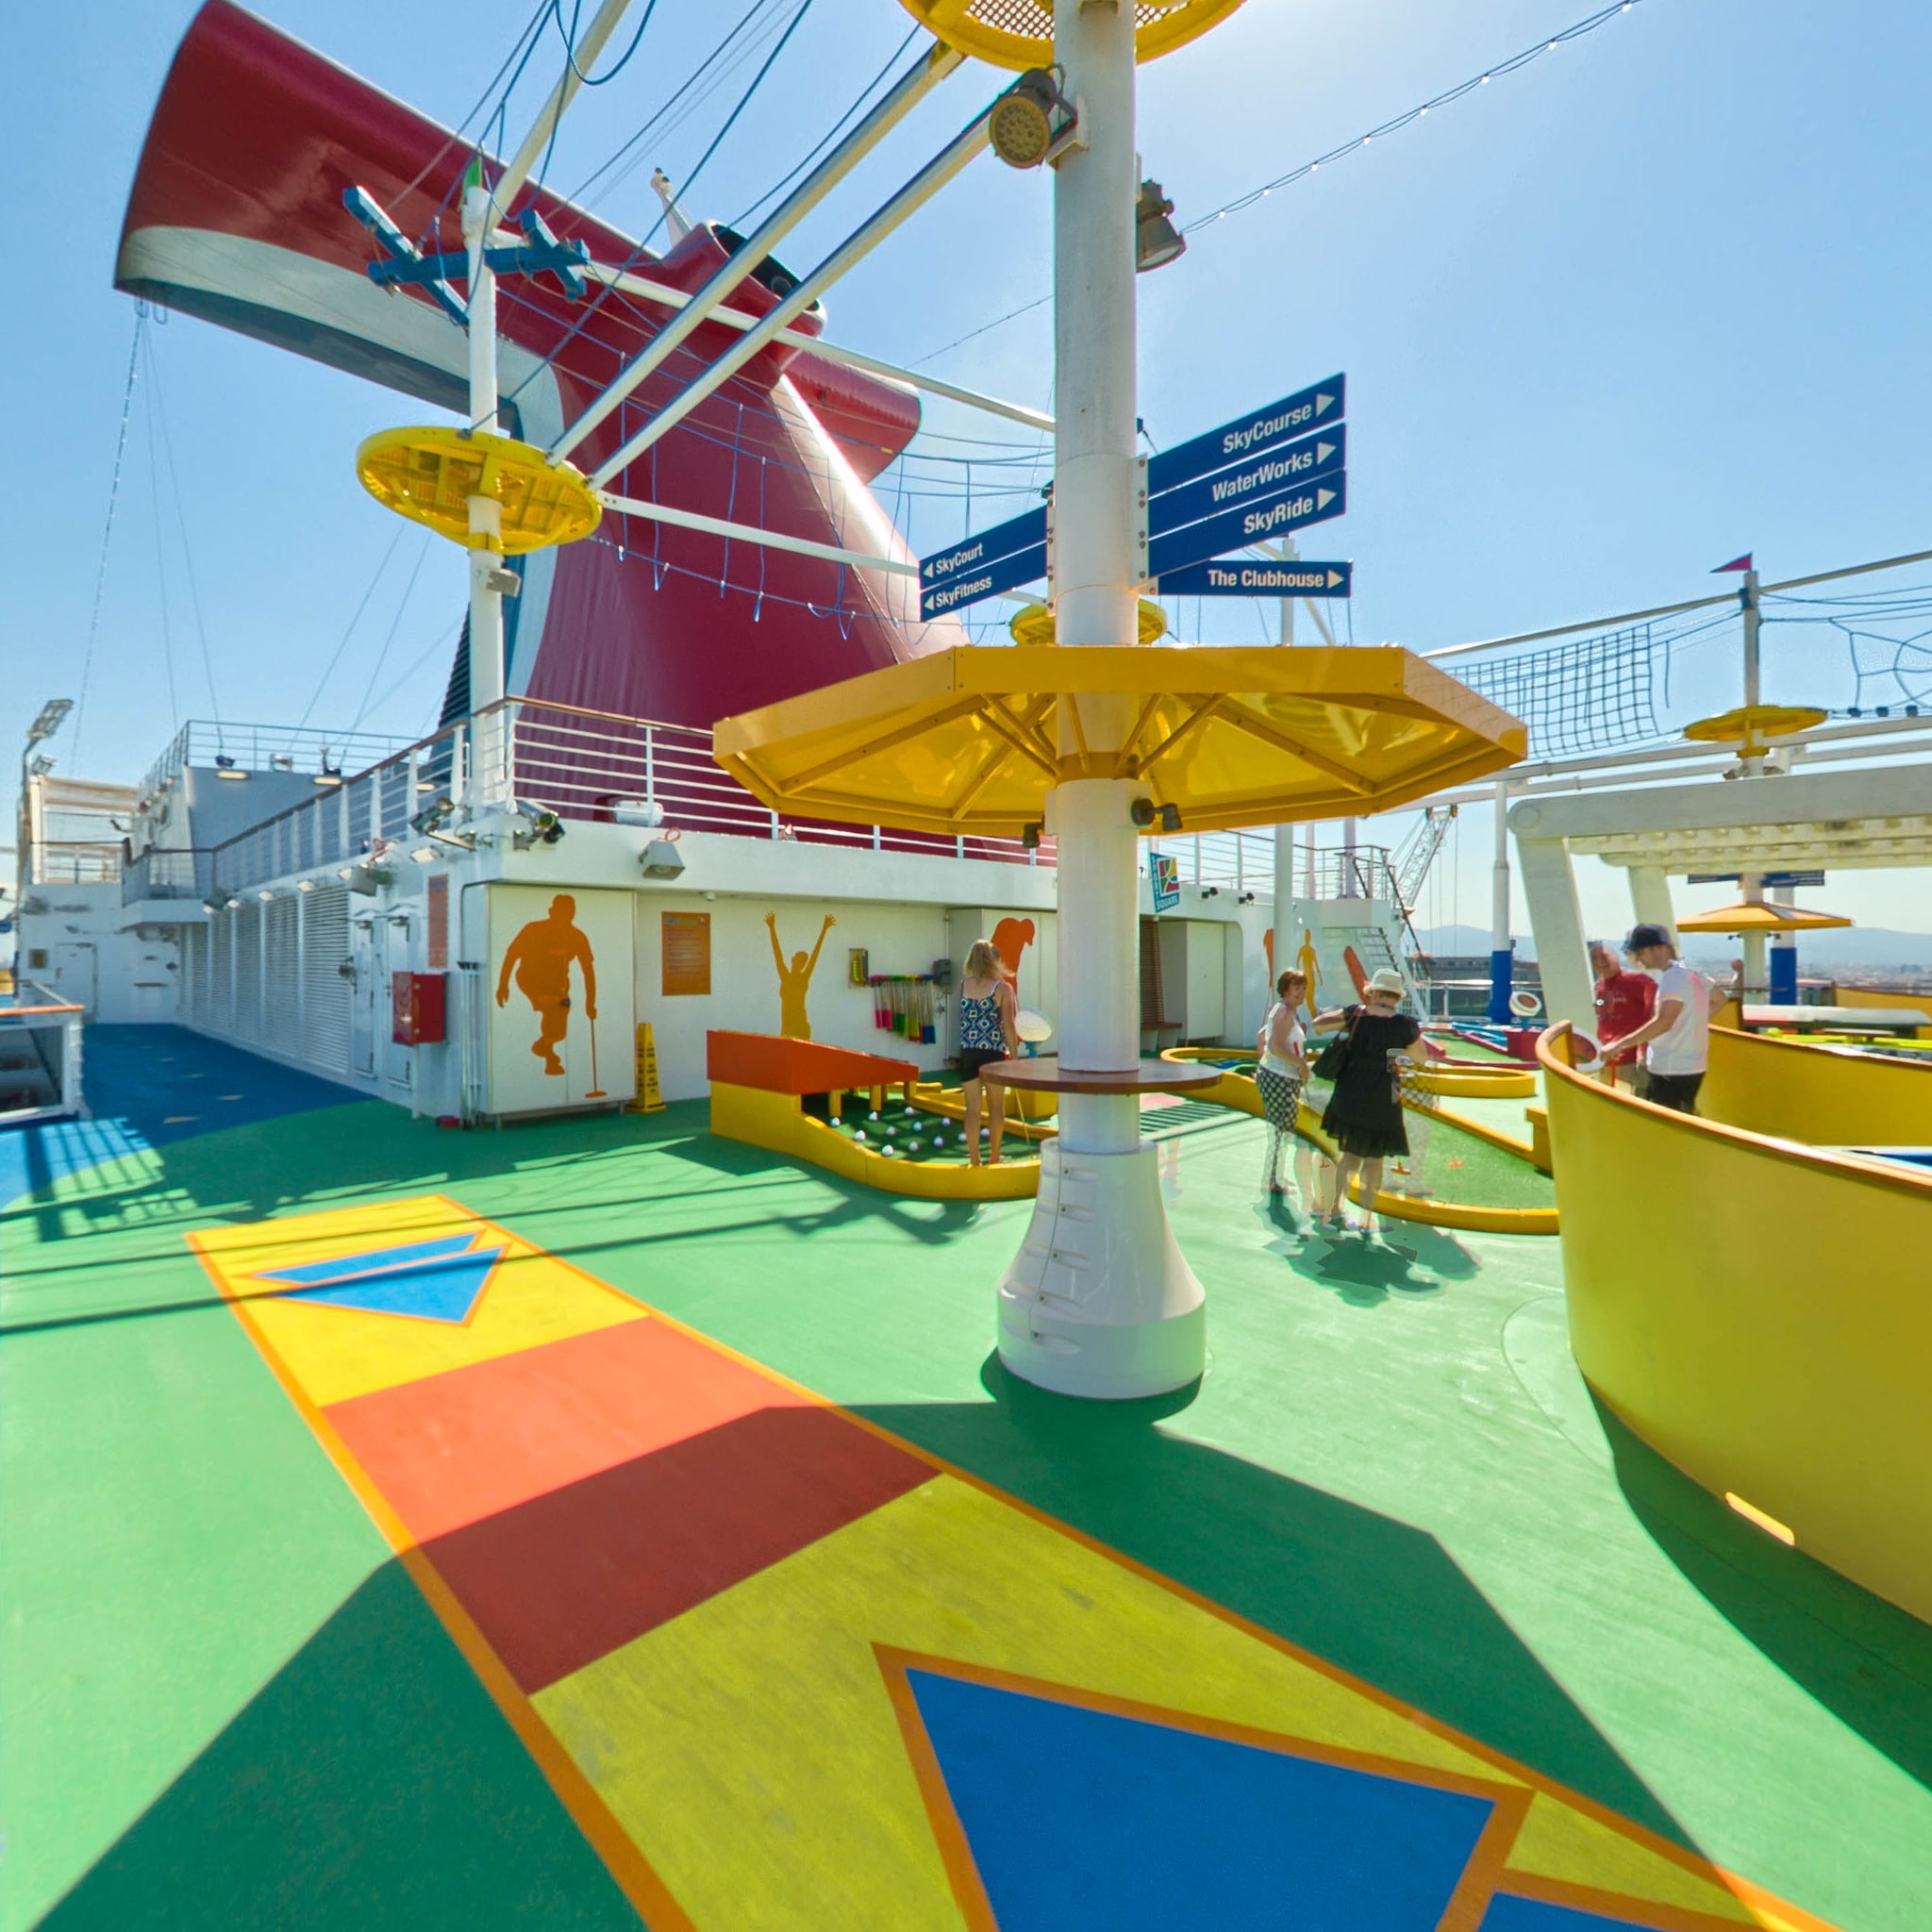 SkyCourse on Carnival Vista Cruise Ship